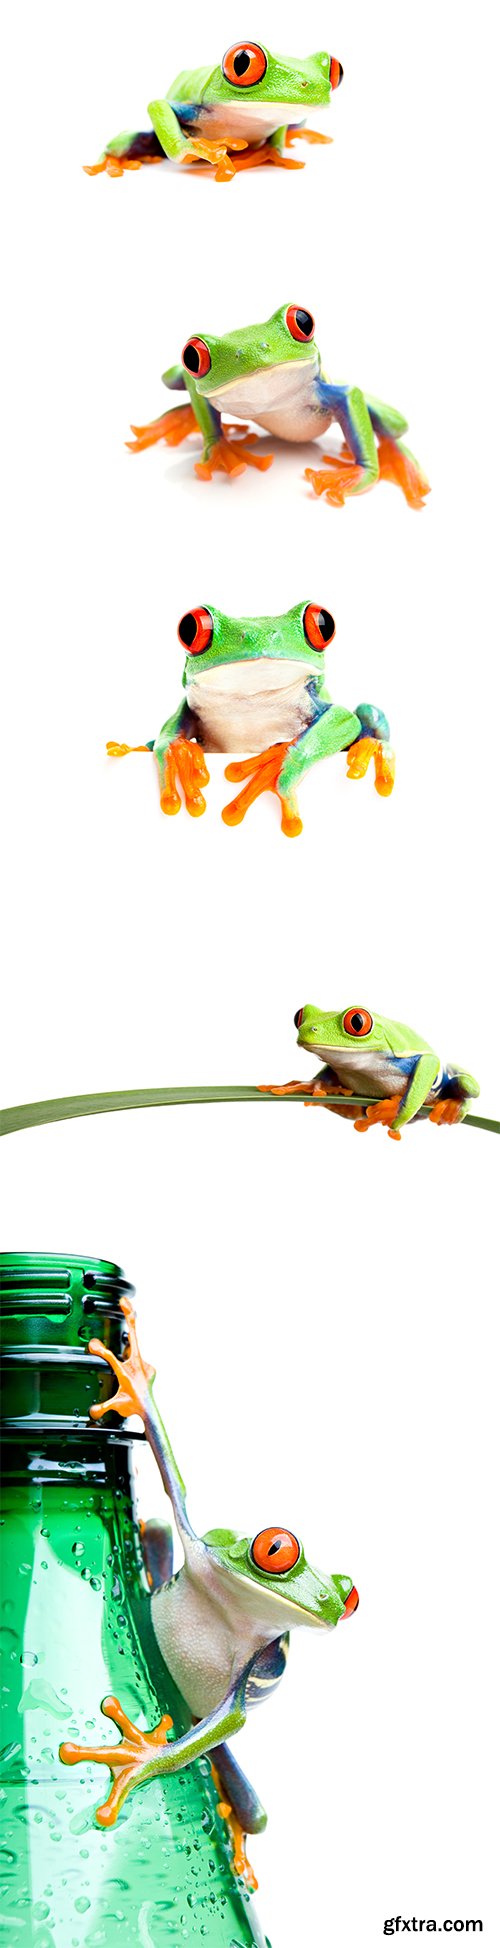 Frog Isolated - 10xJPGs